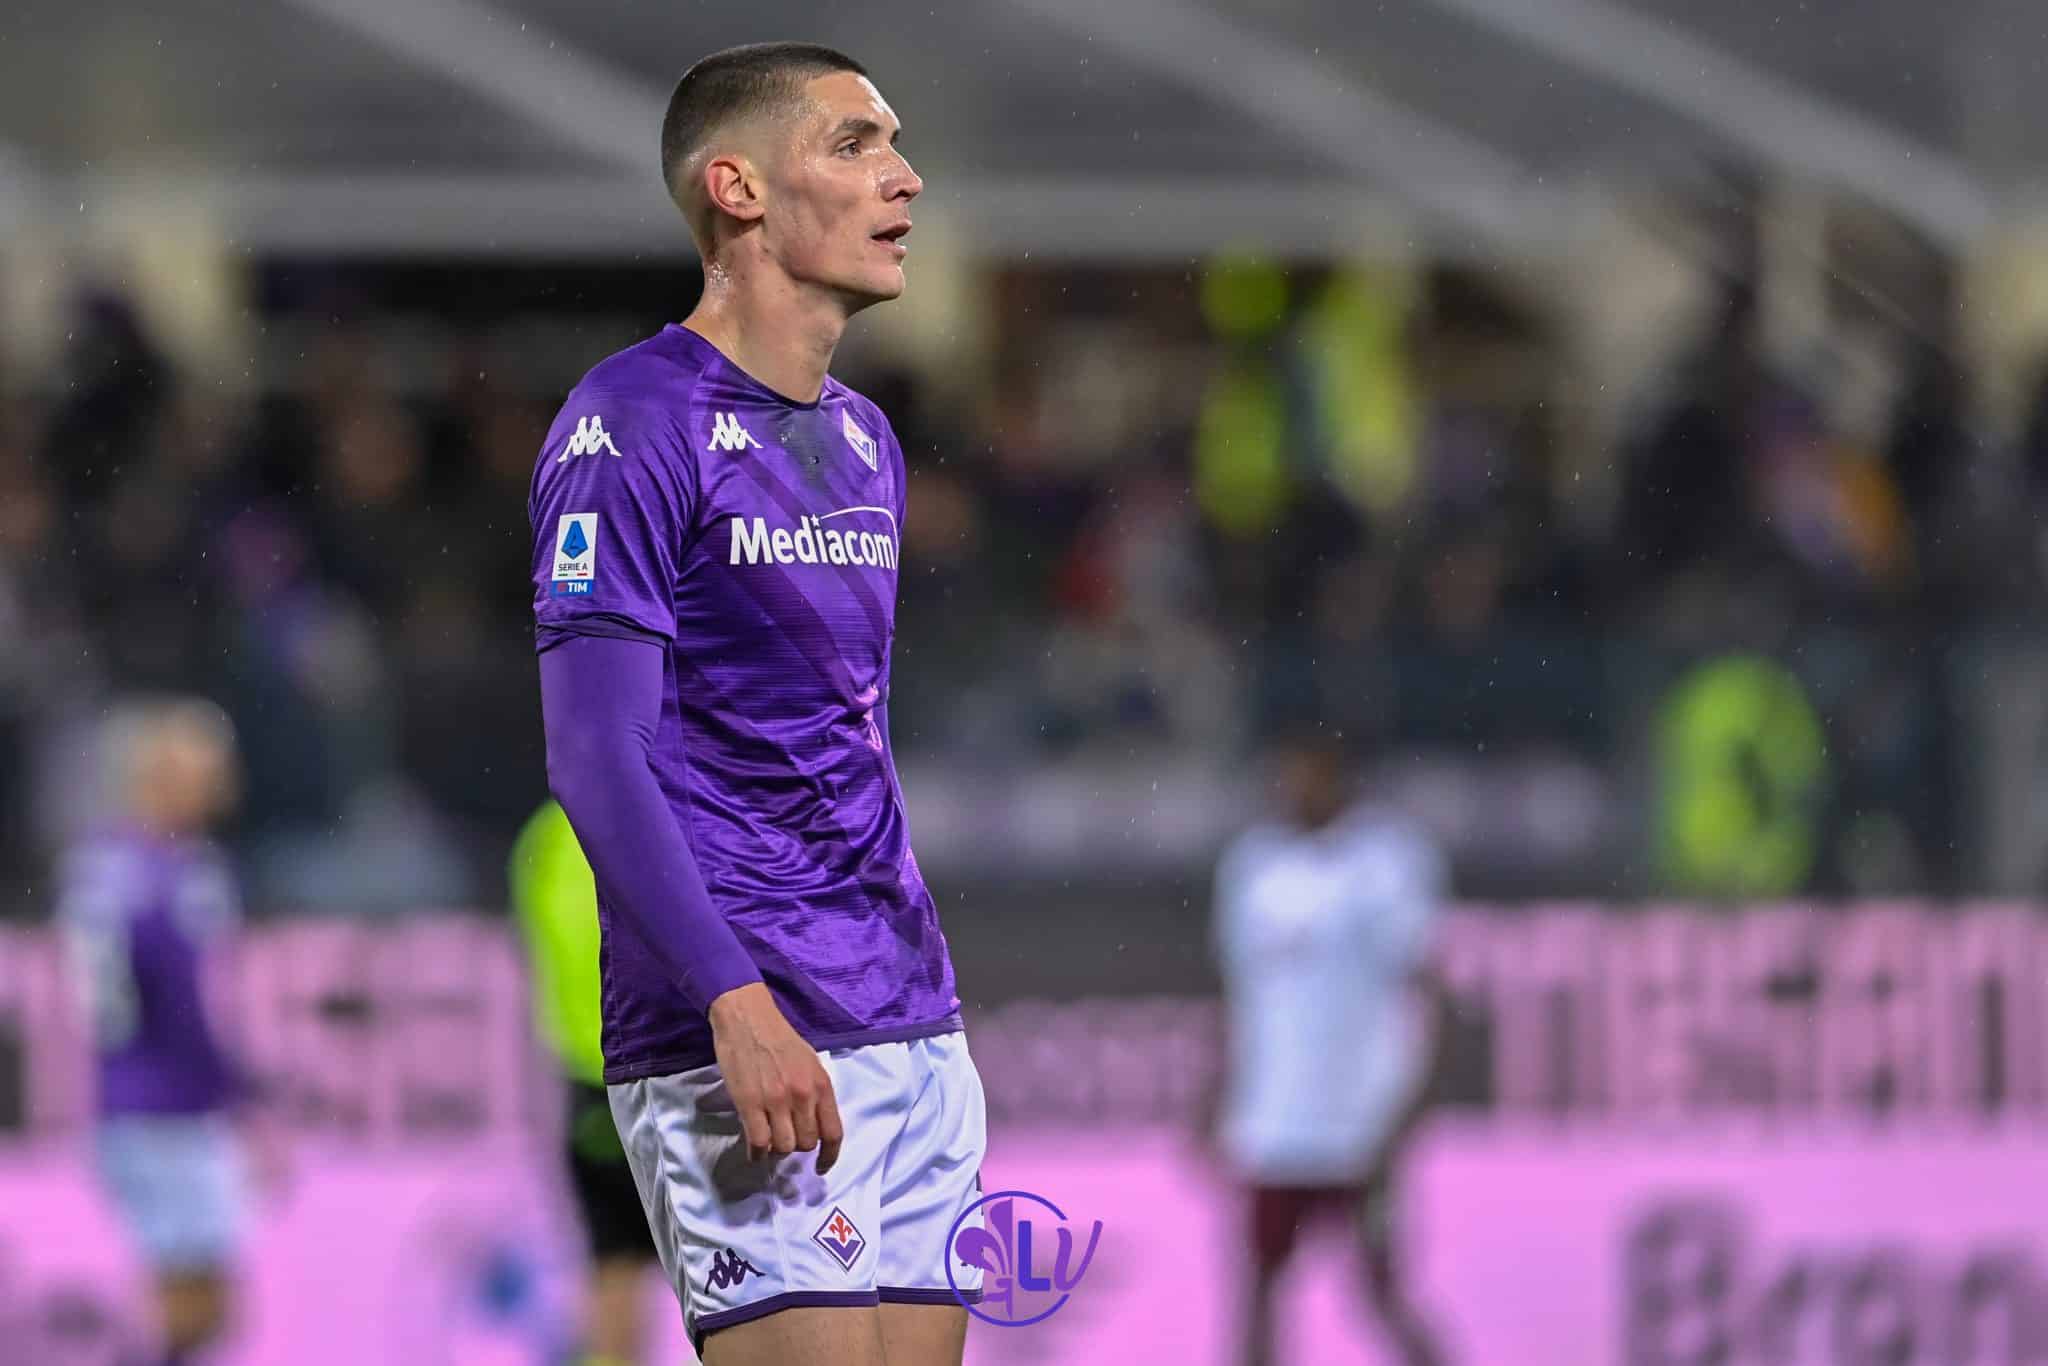 Une vilaine Fiorentina coule aux Franchi, Turin remporte le match direct 1-0 grâce à Miranchuk